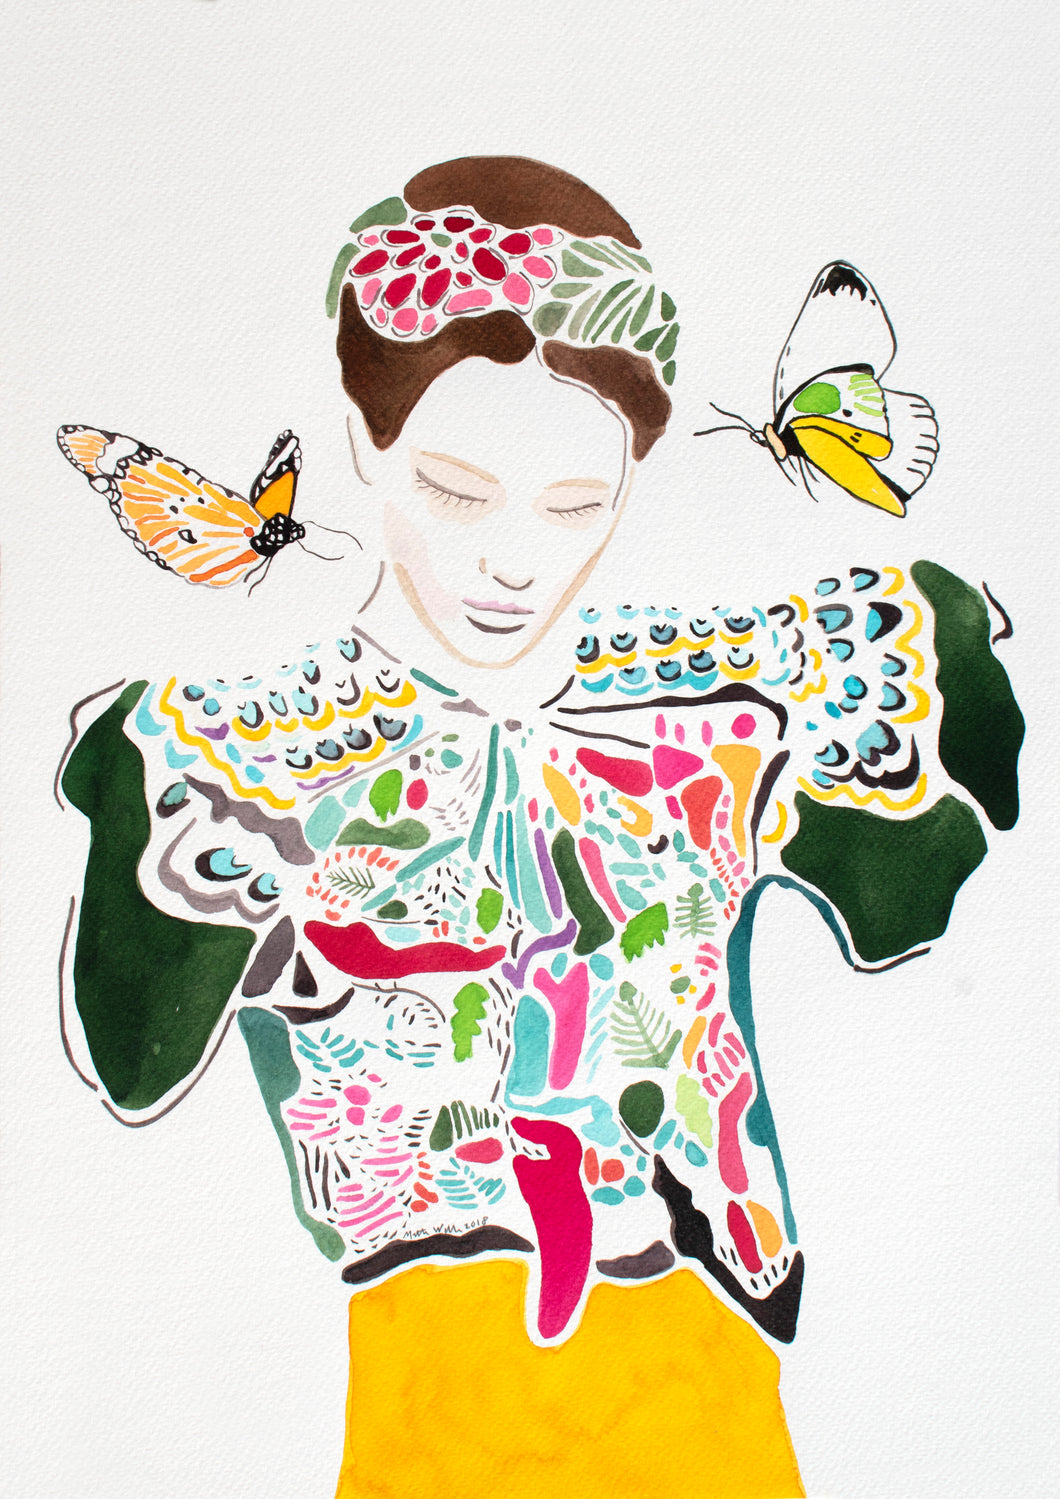 The Butterfly - Signeret kunsttryk af Mette Wille (A3)